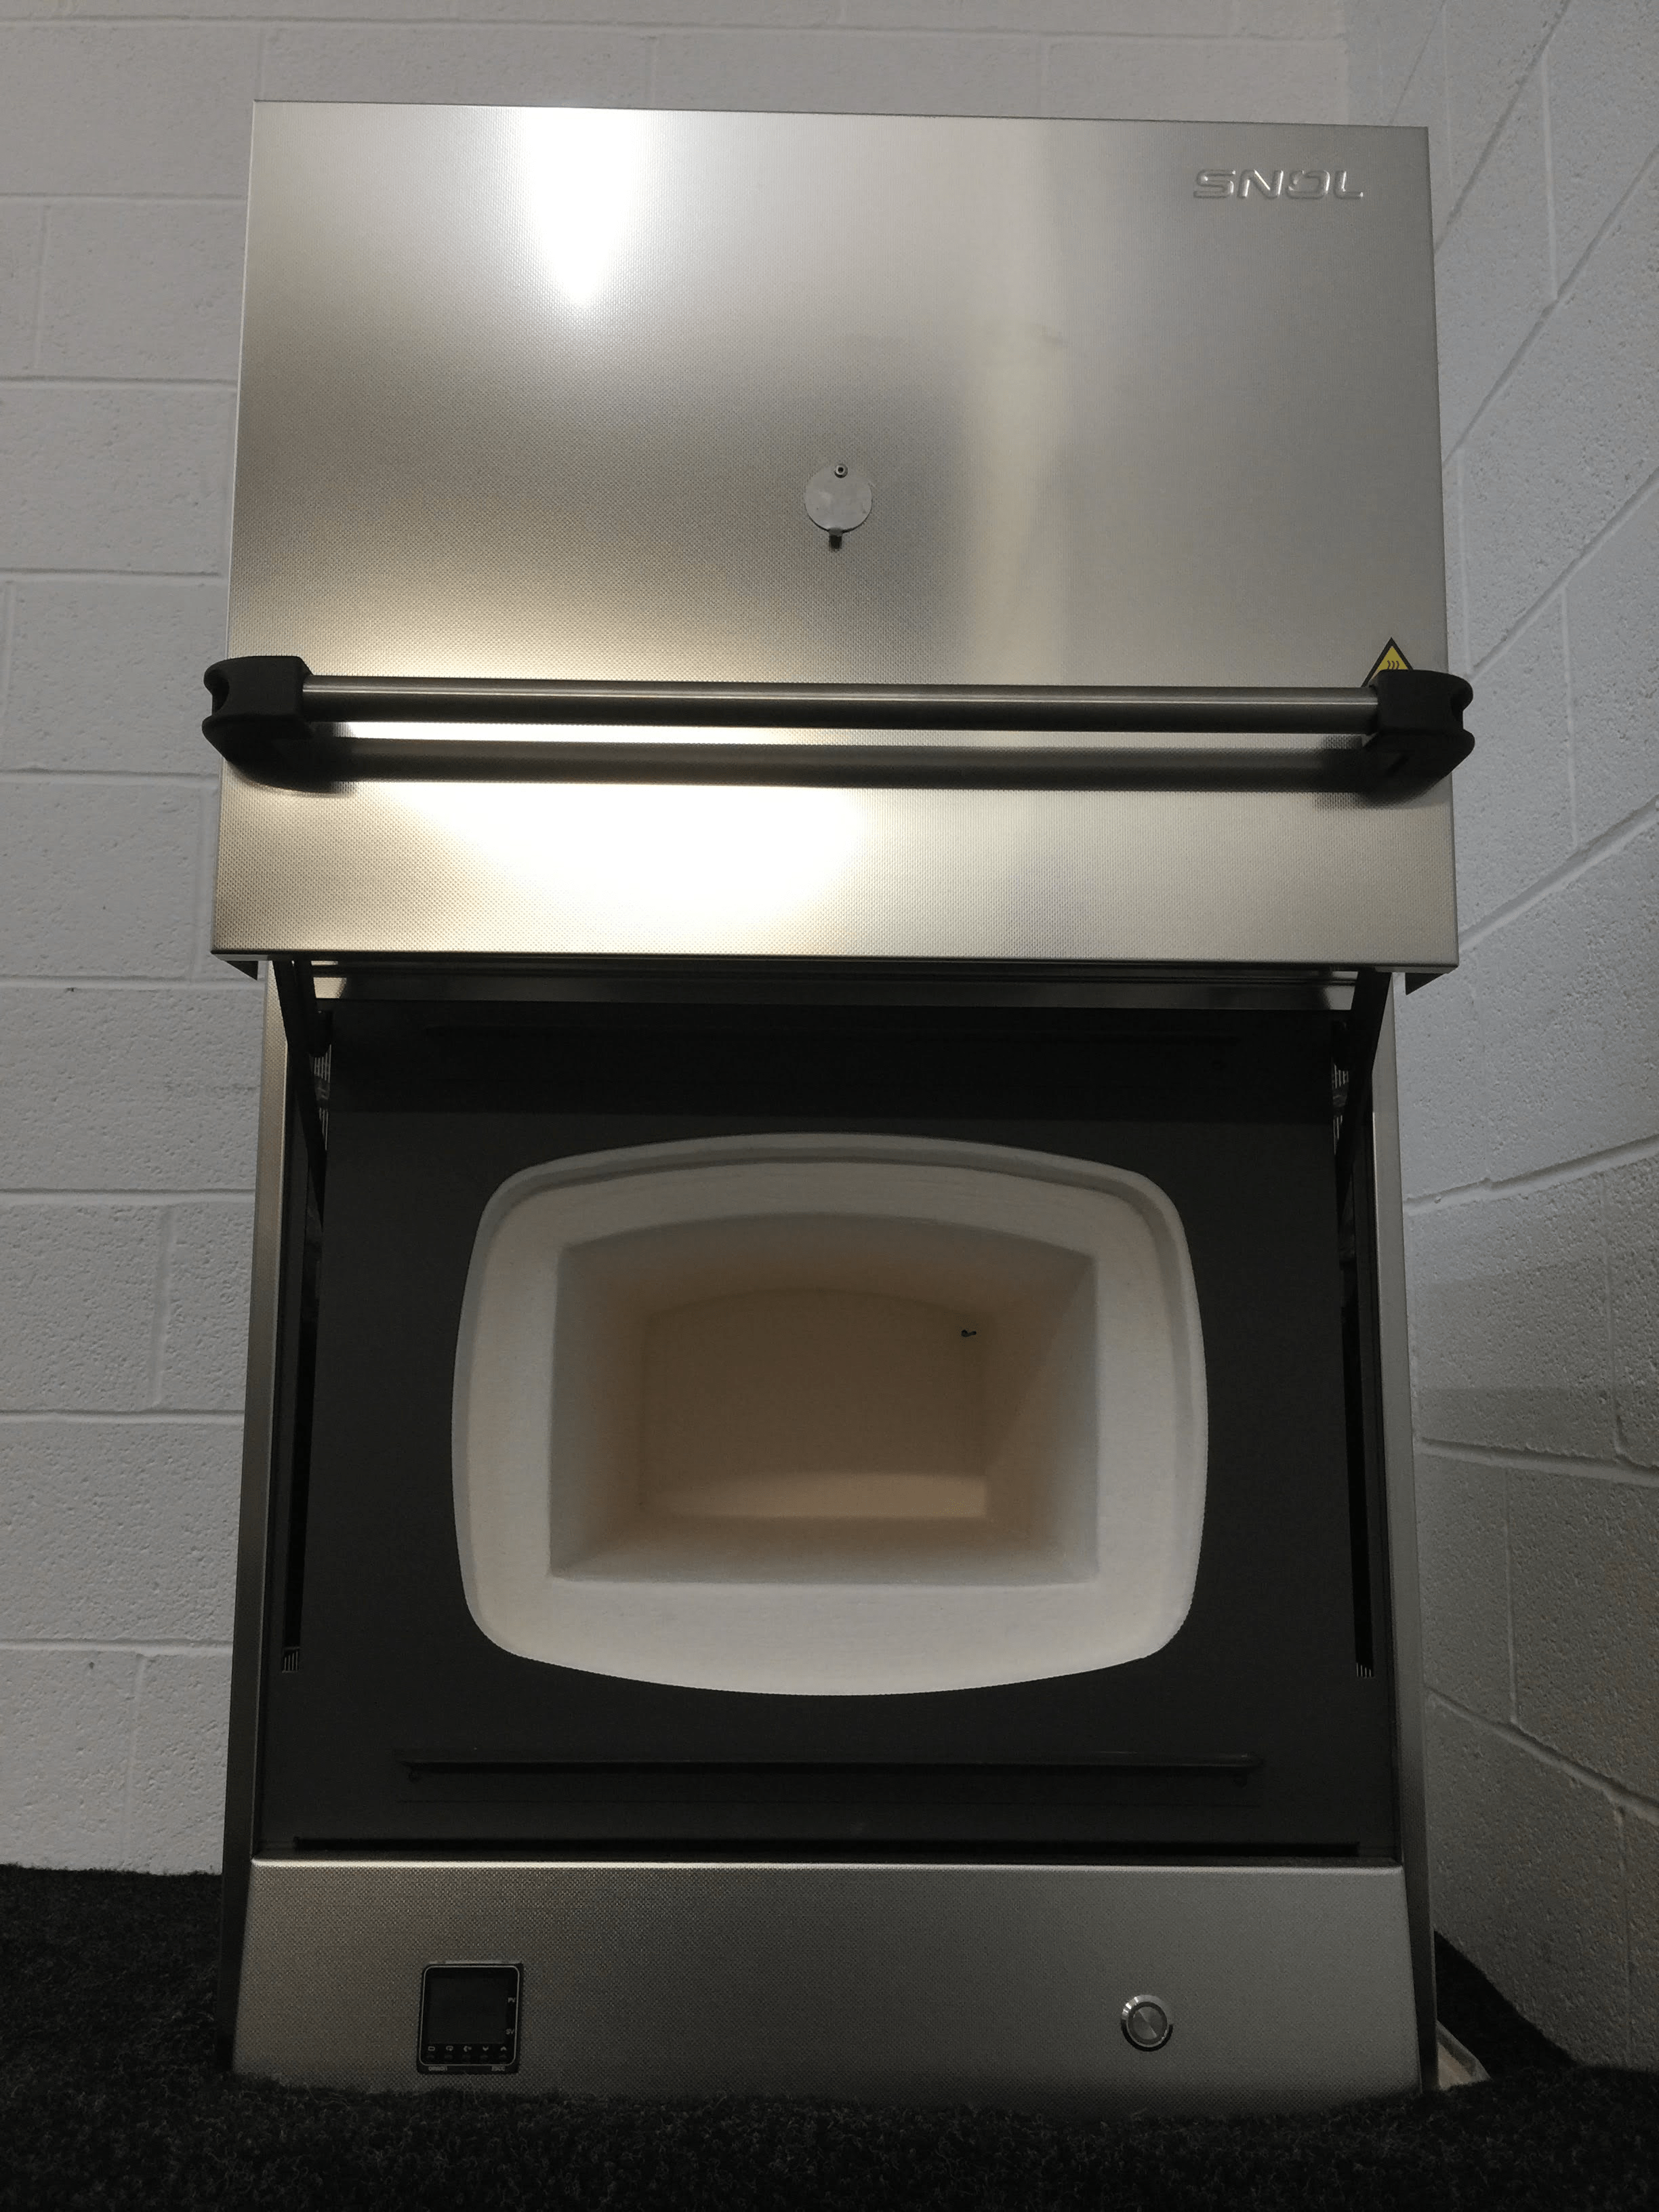 snol 22/1100 high temperature furnace – display model